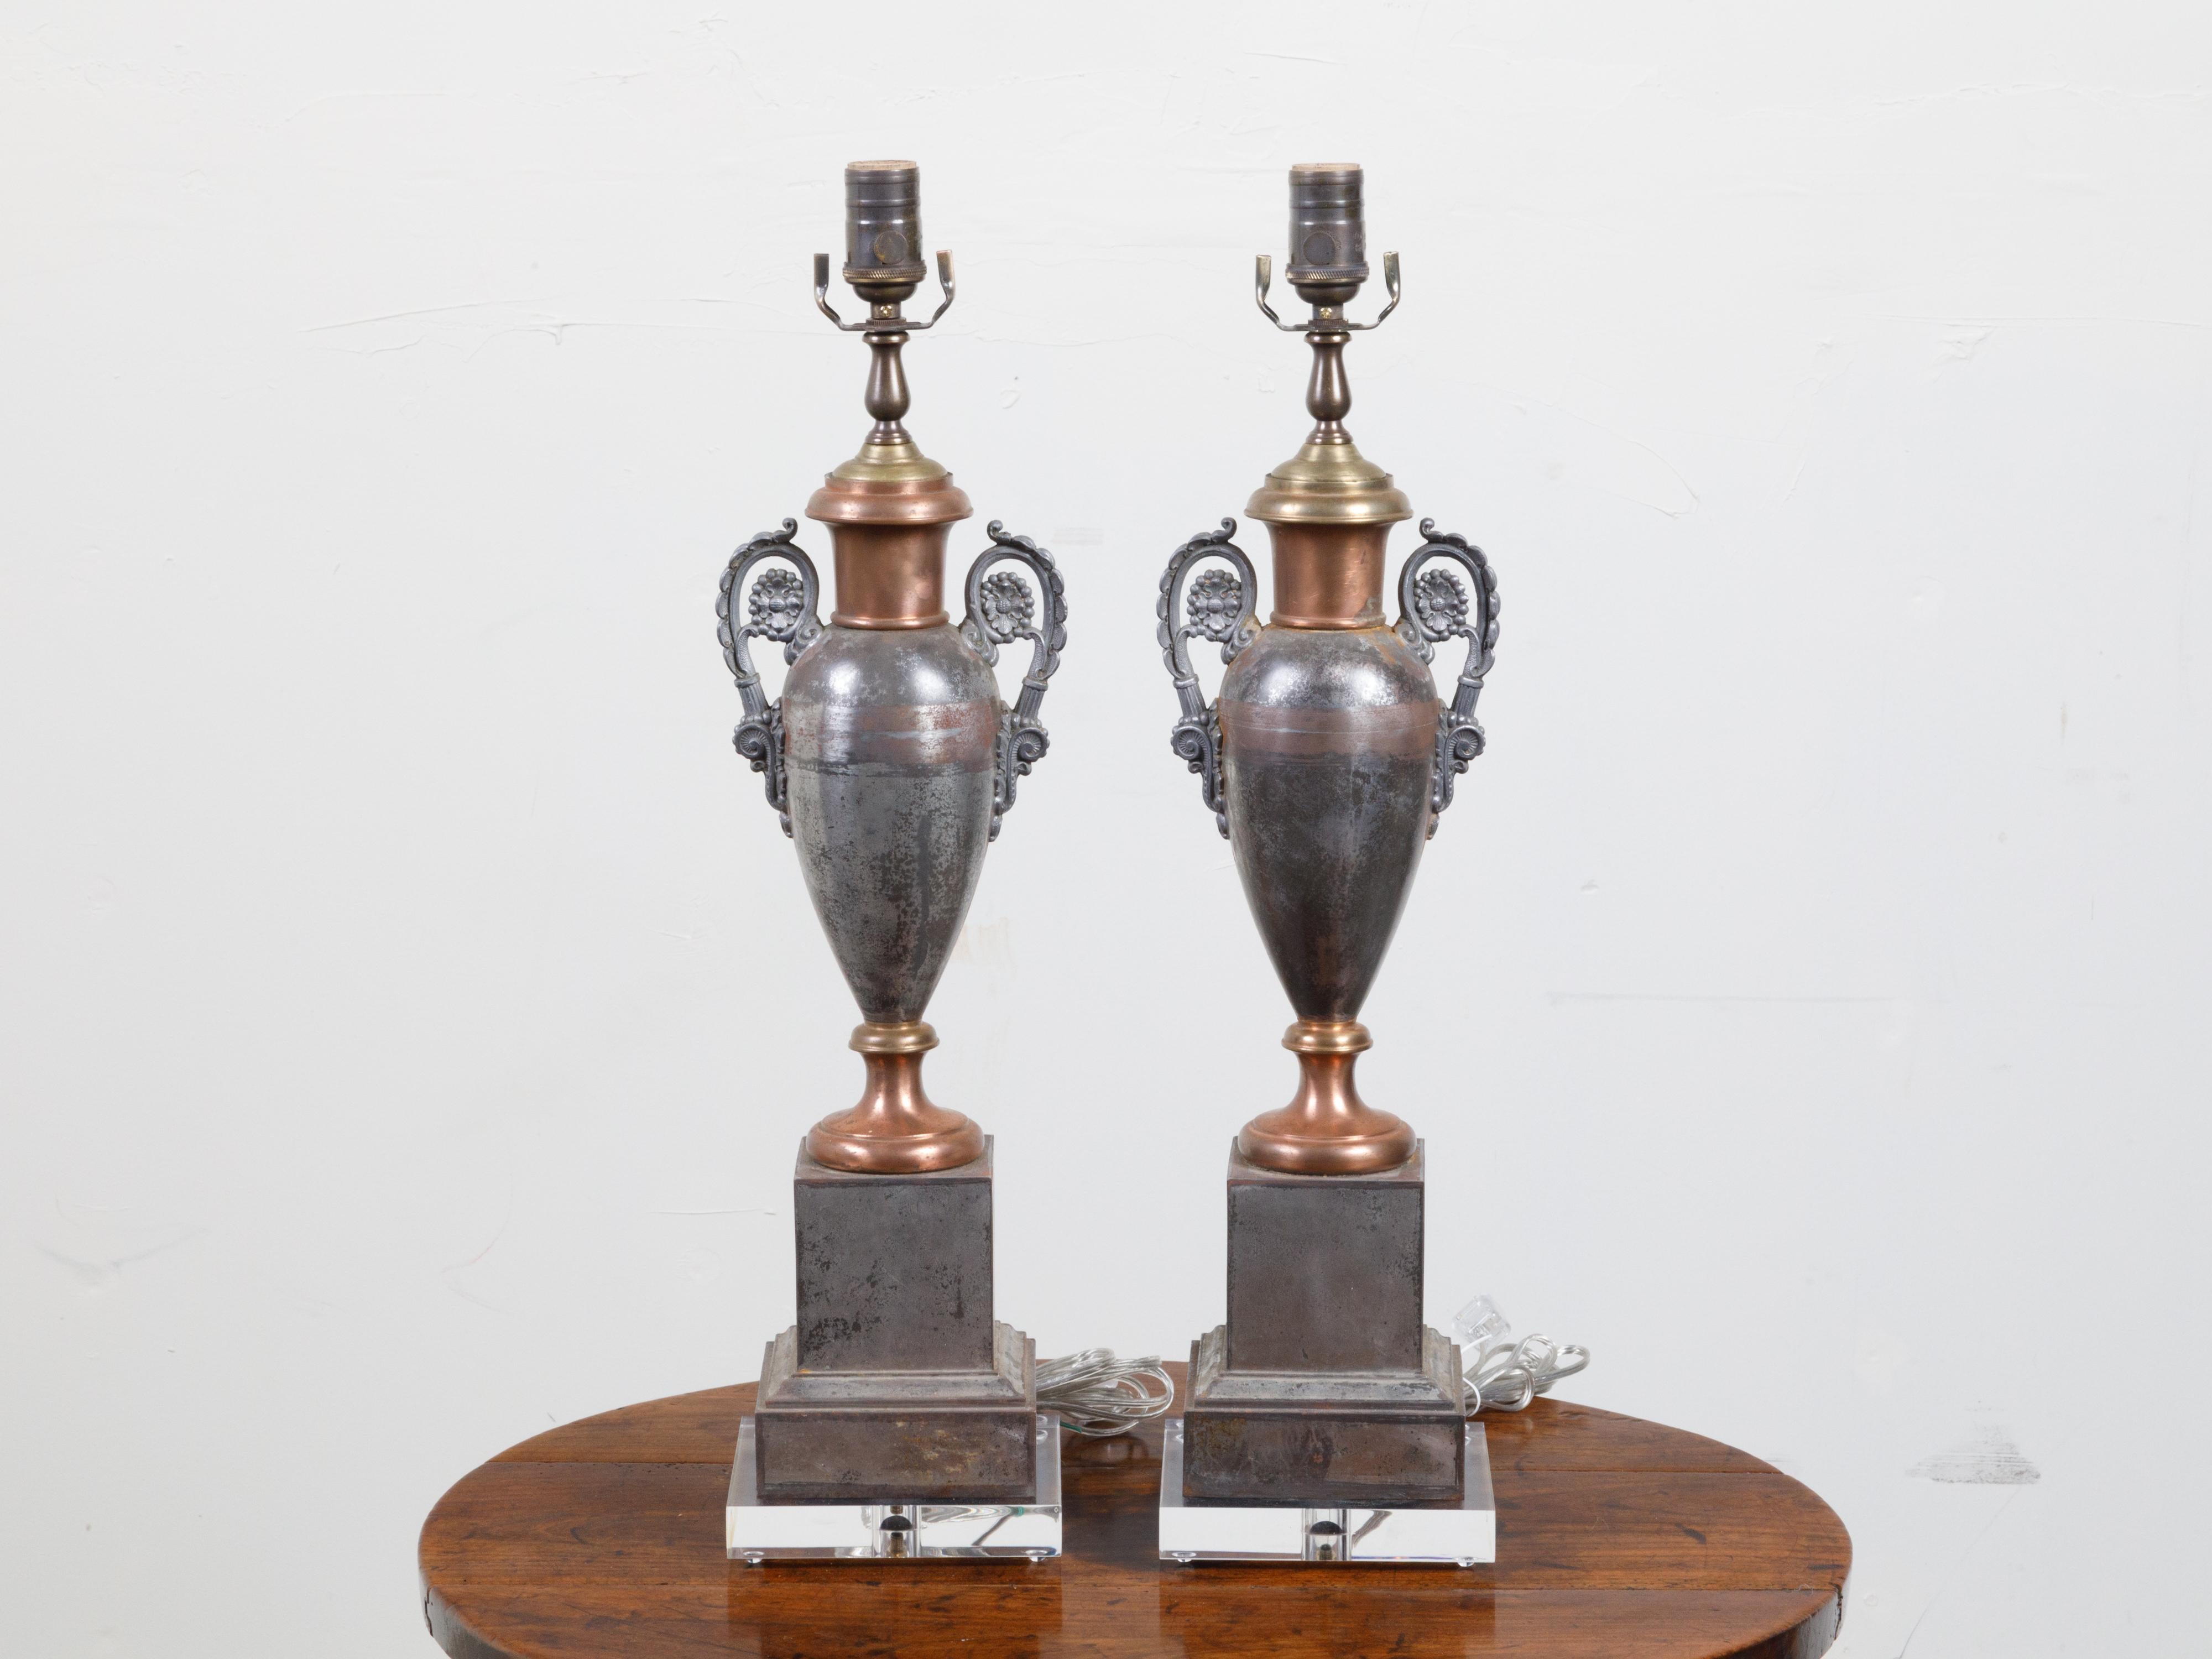 Ein Paar englische Tôle-Amphoren-Tischlampen aus dem 19. Jahrhundert, mit geschwungenen Griffen und Sockeln aus Lucit. Die beiden Tischlampen, die im 19. Jahrhundert in England entstanden sind, ziehen mit ihrer klassischen Amphorenform die